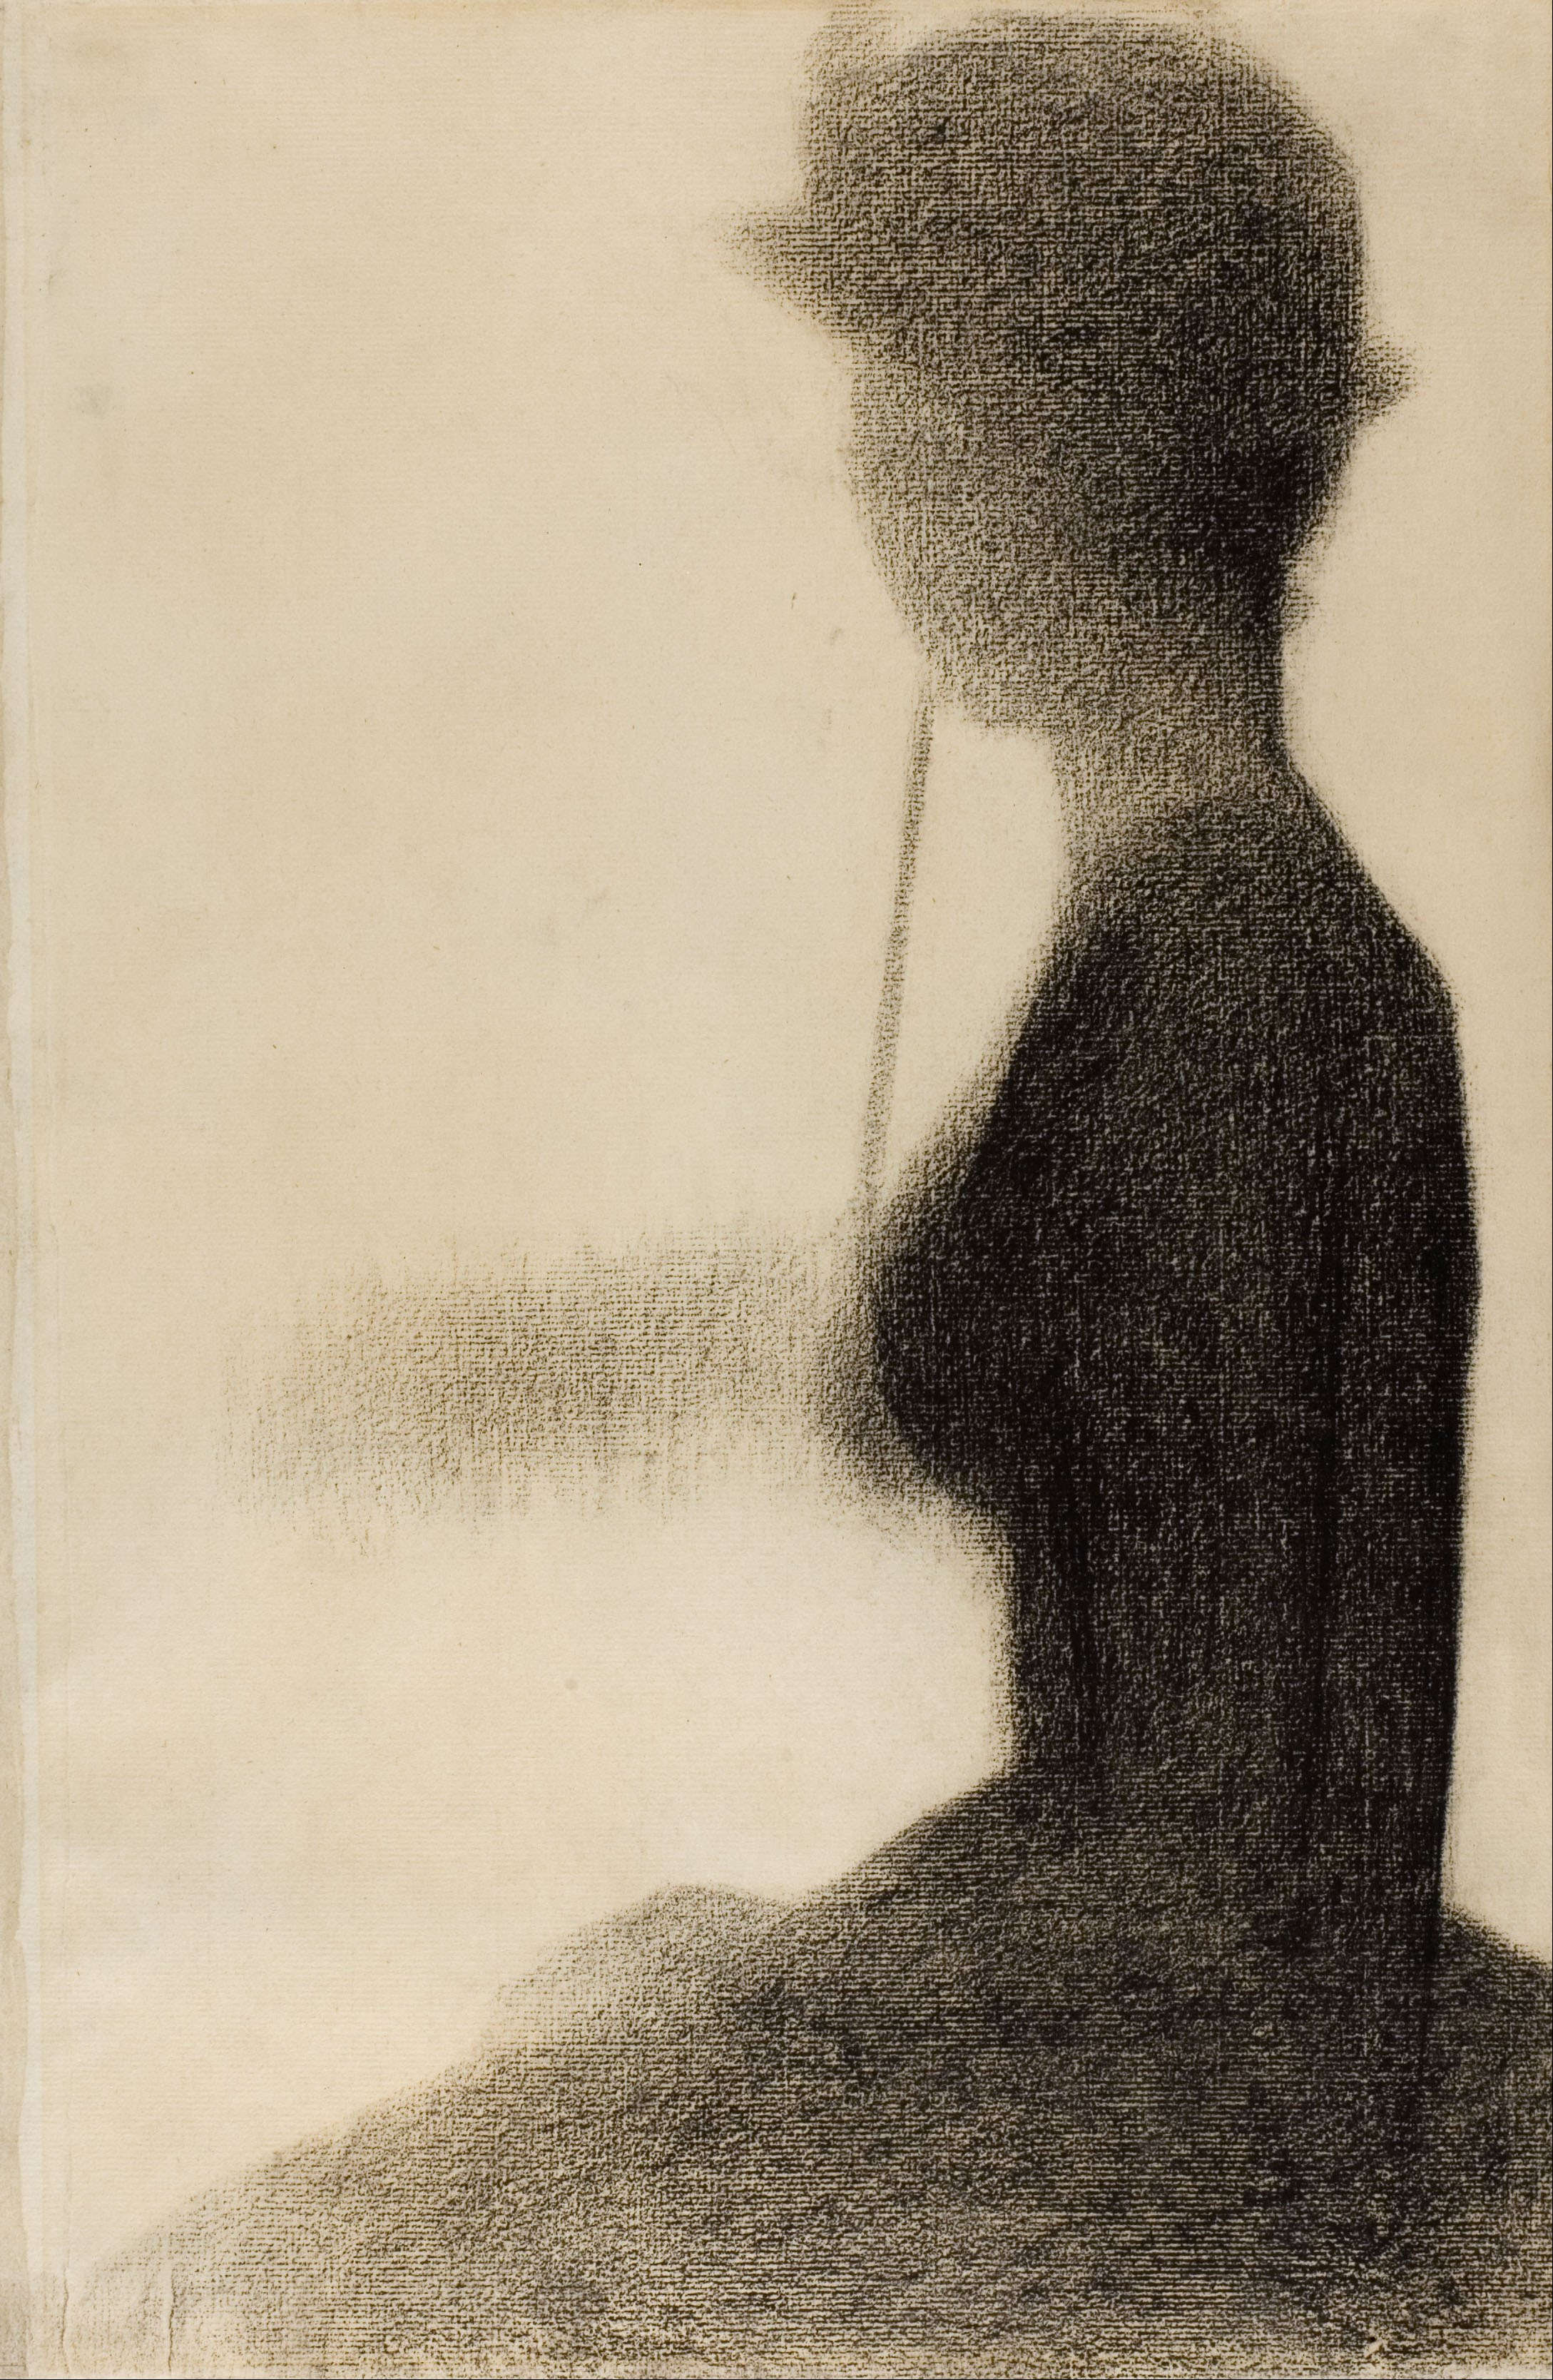 坐着的撑阳伞的女人 by 乔治 修拉 - 1884-1885 - 477 x 315 mm 芝加哥藝術博物館